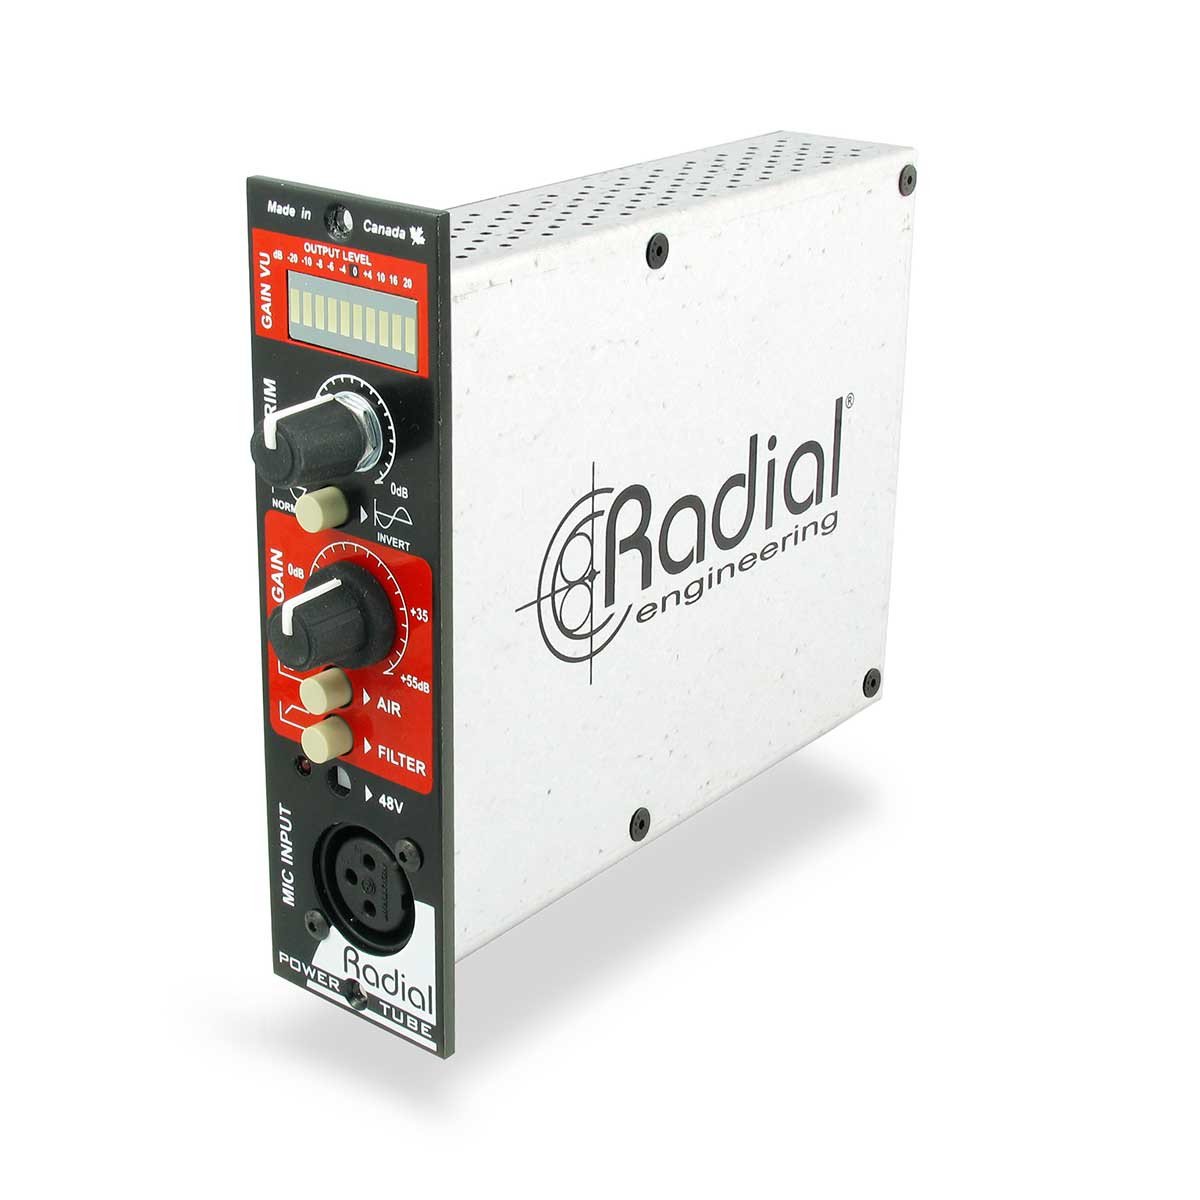 500 Series - Radial PowerTube 500 Series Tube Preamp Module